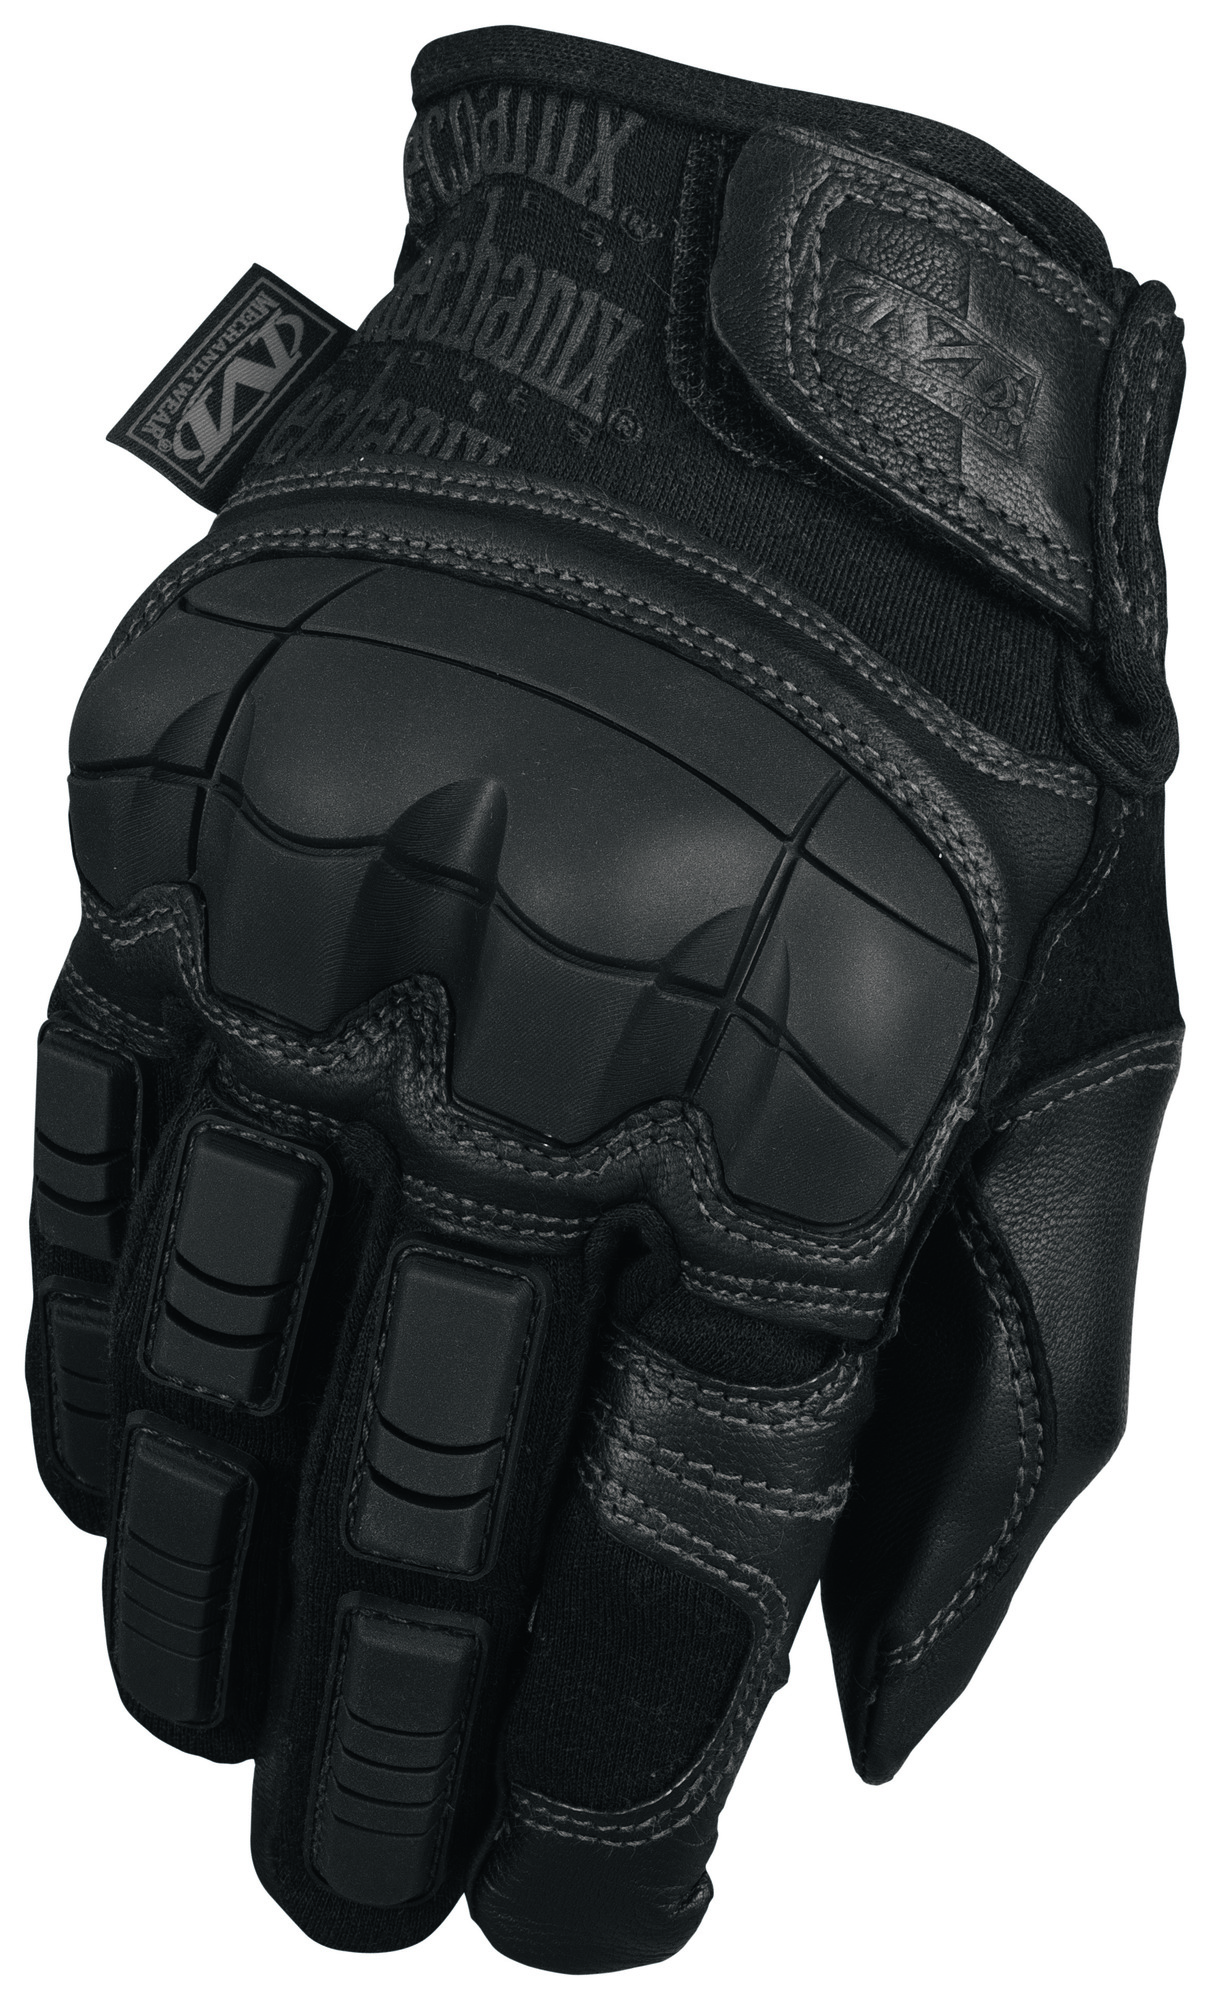 E-shop MECHANIX rukavice Breacher - Covert - čierne XL/11